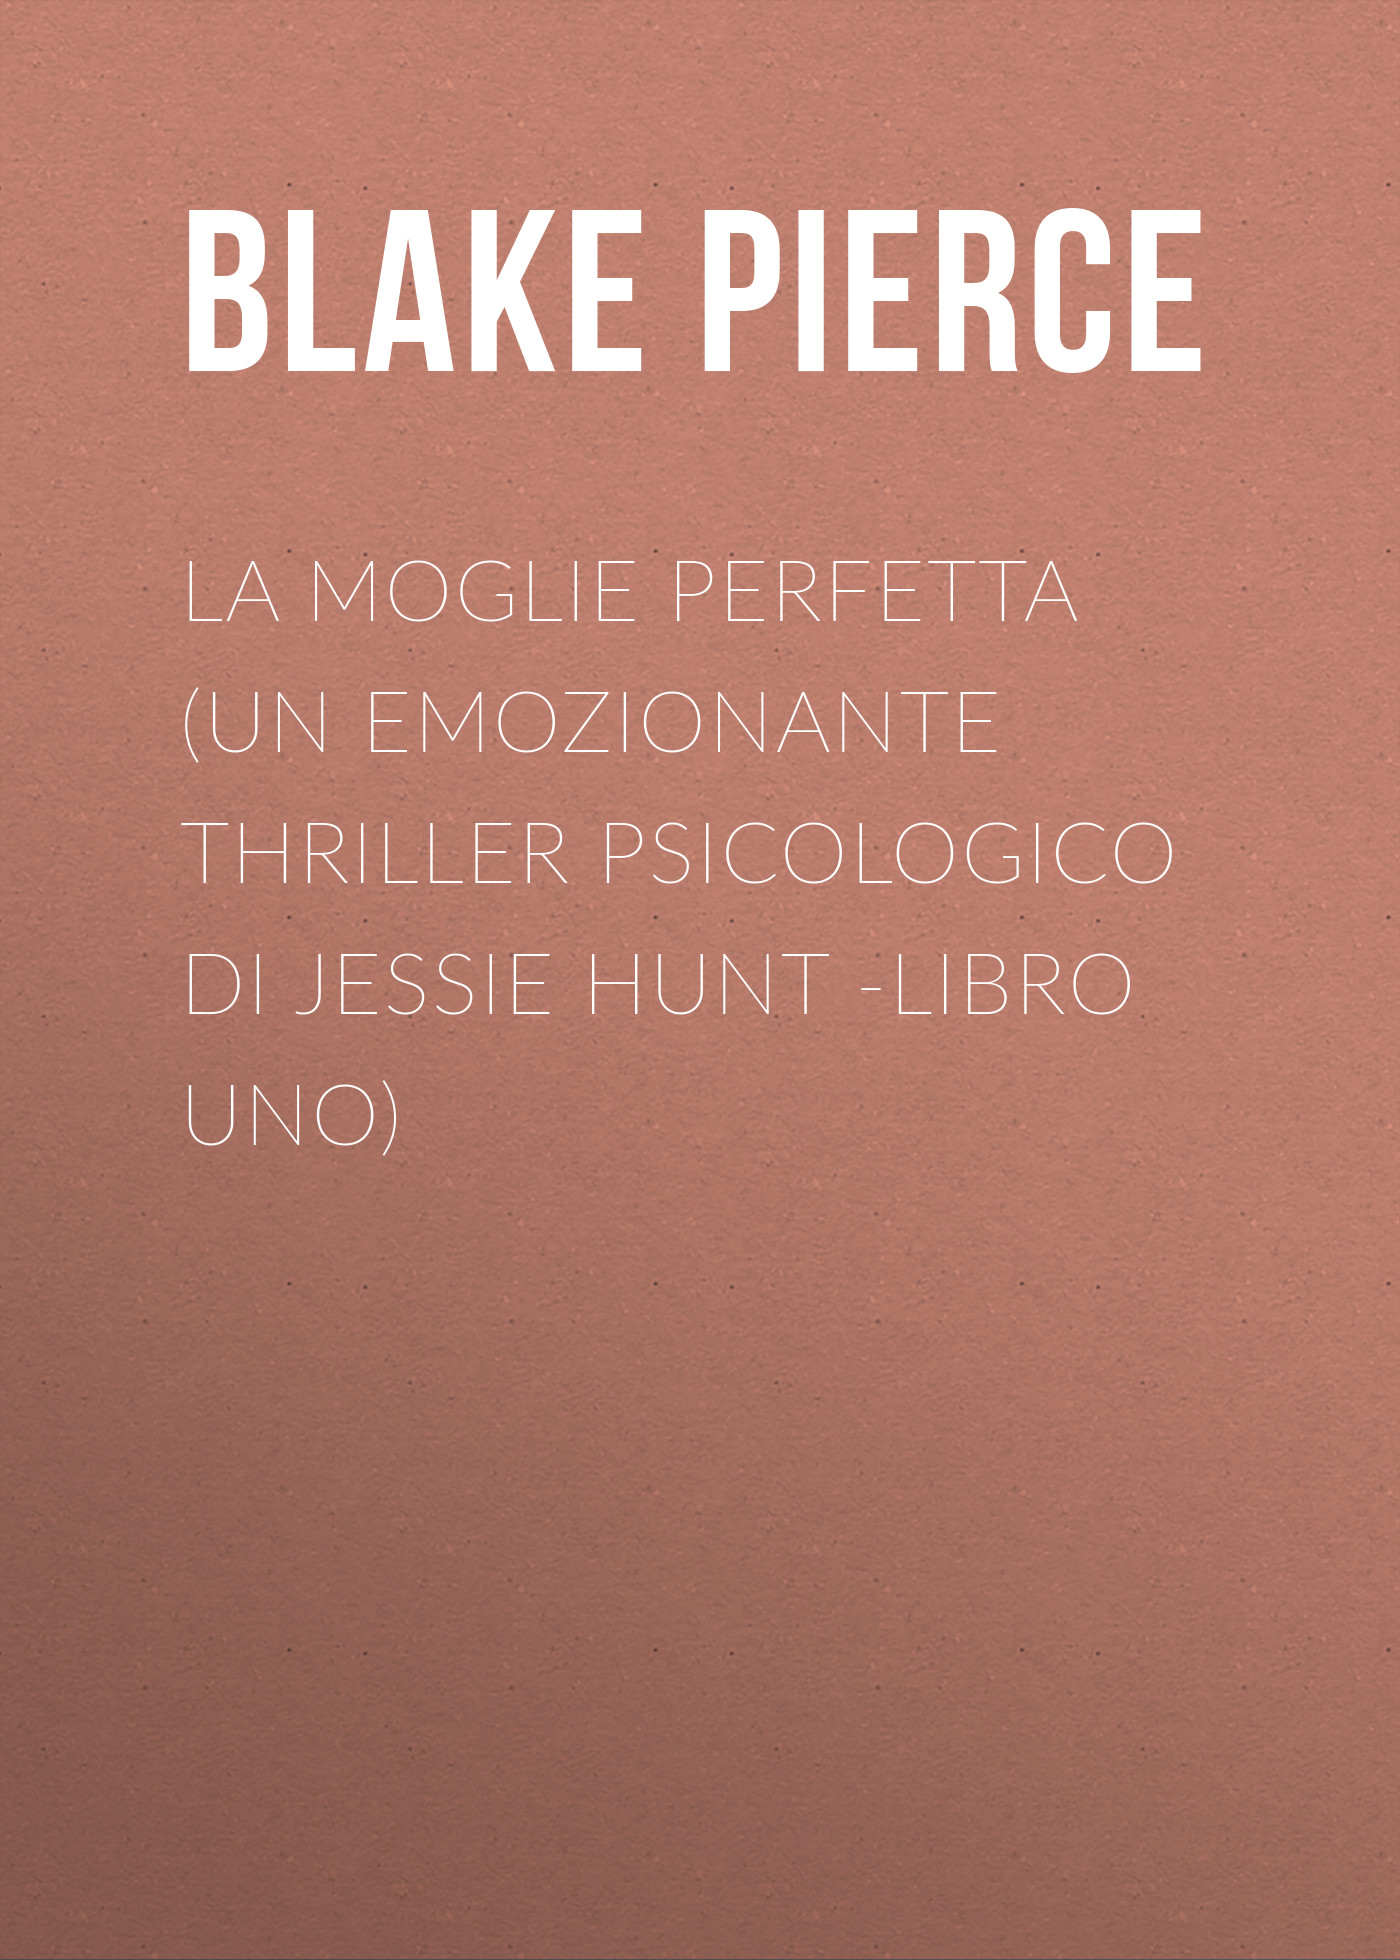 Скачать La moglie perfetta (Un emozionante thriller psicologico di Jessie Hunt -Libro Uno) - Blake Pierce